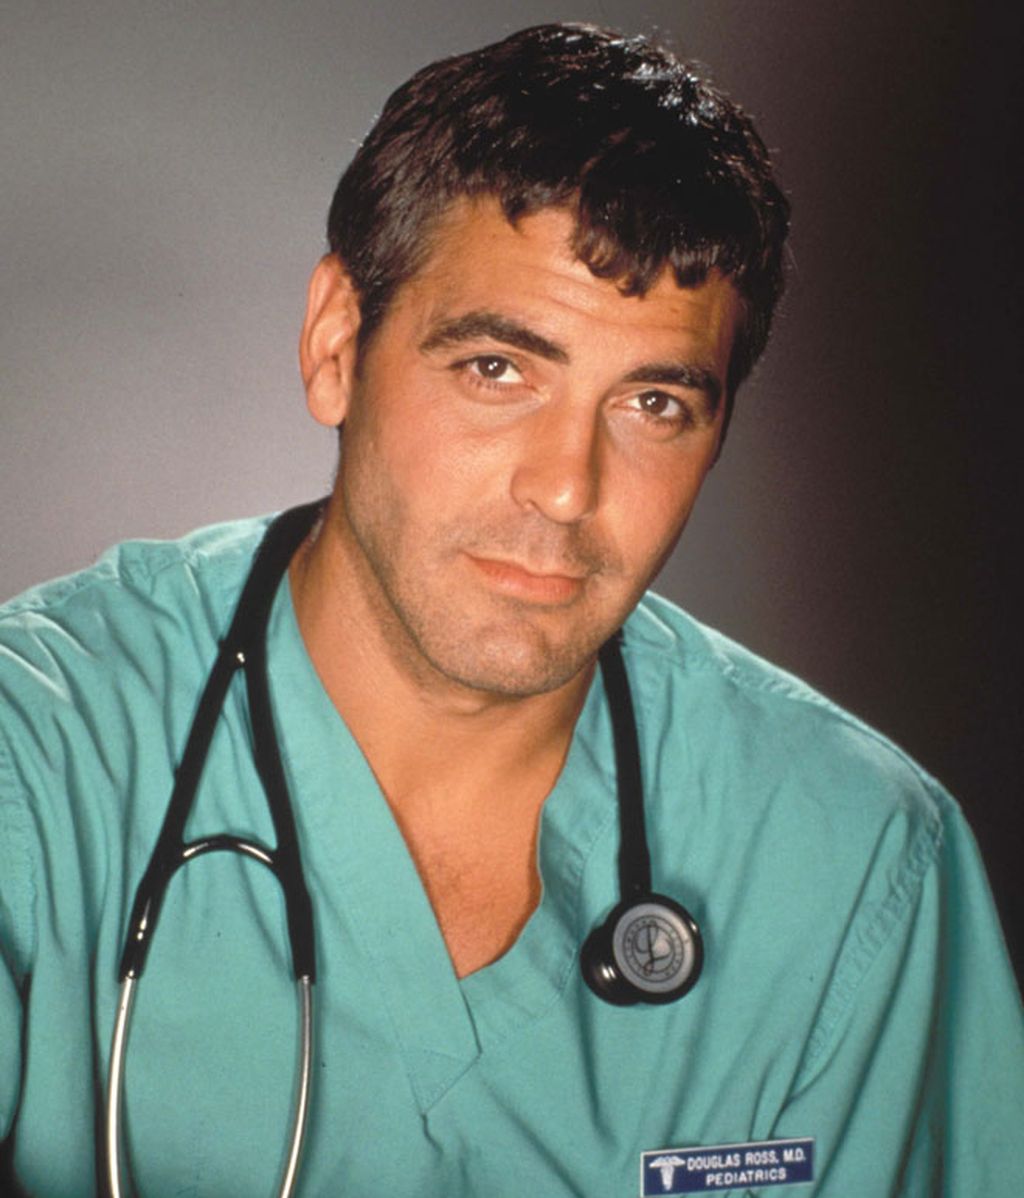 Los envidiados 50 años de Clooney